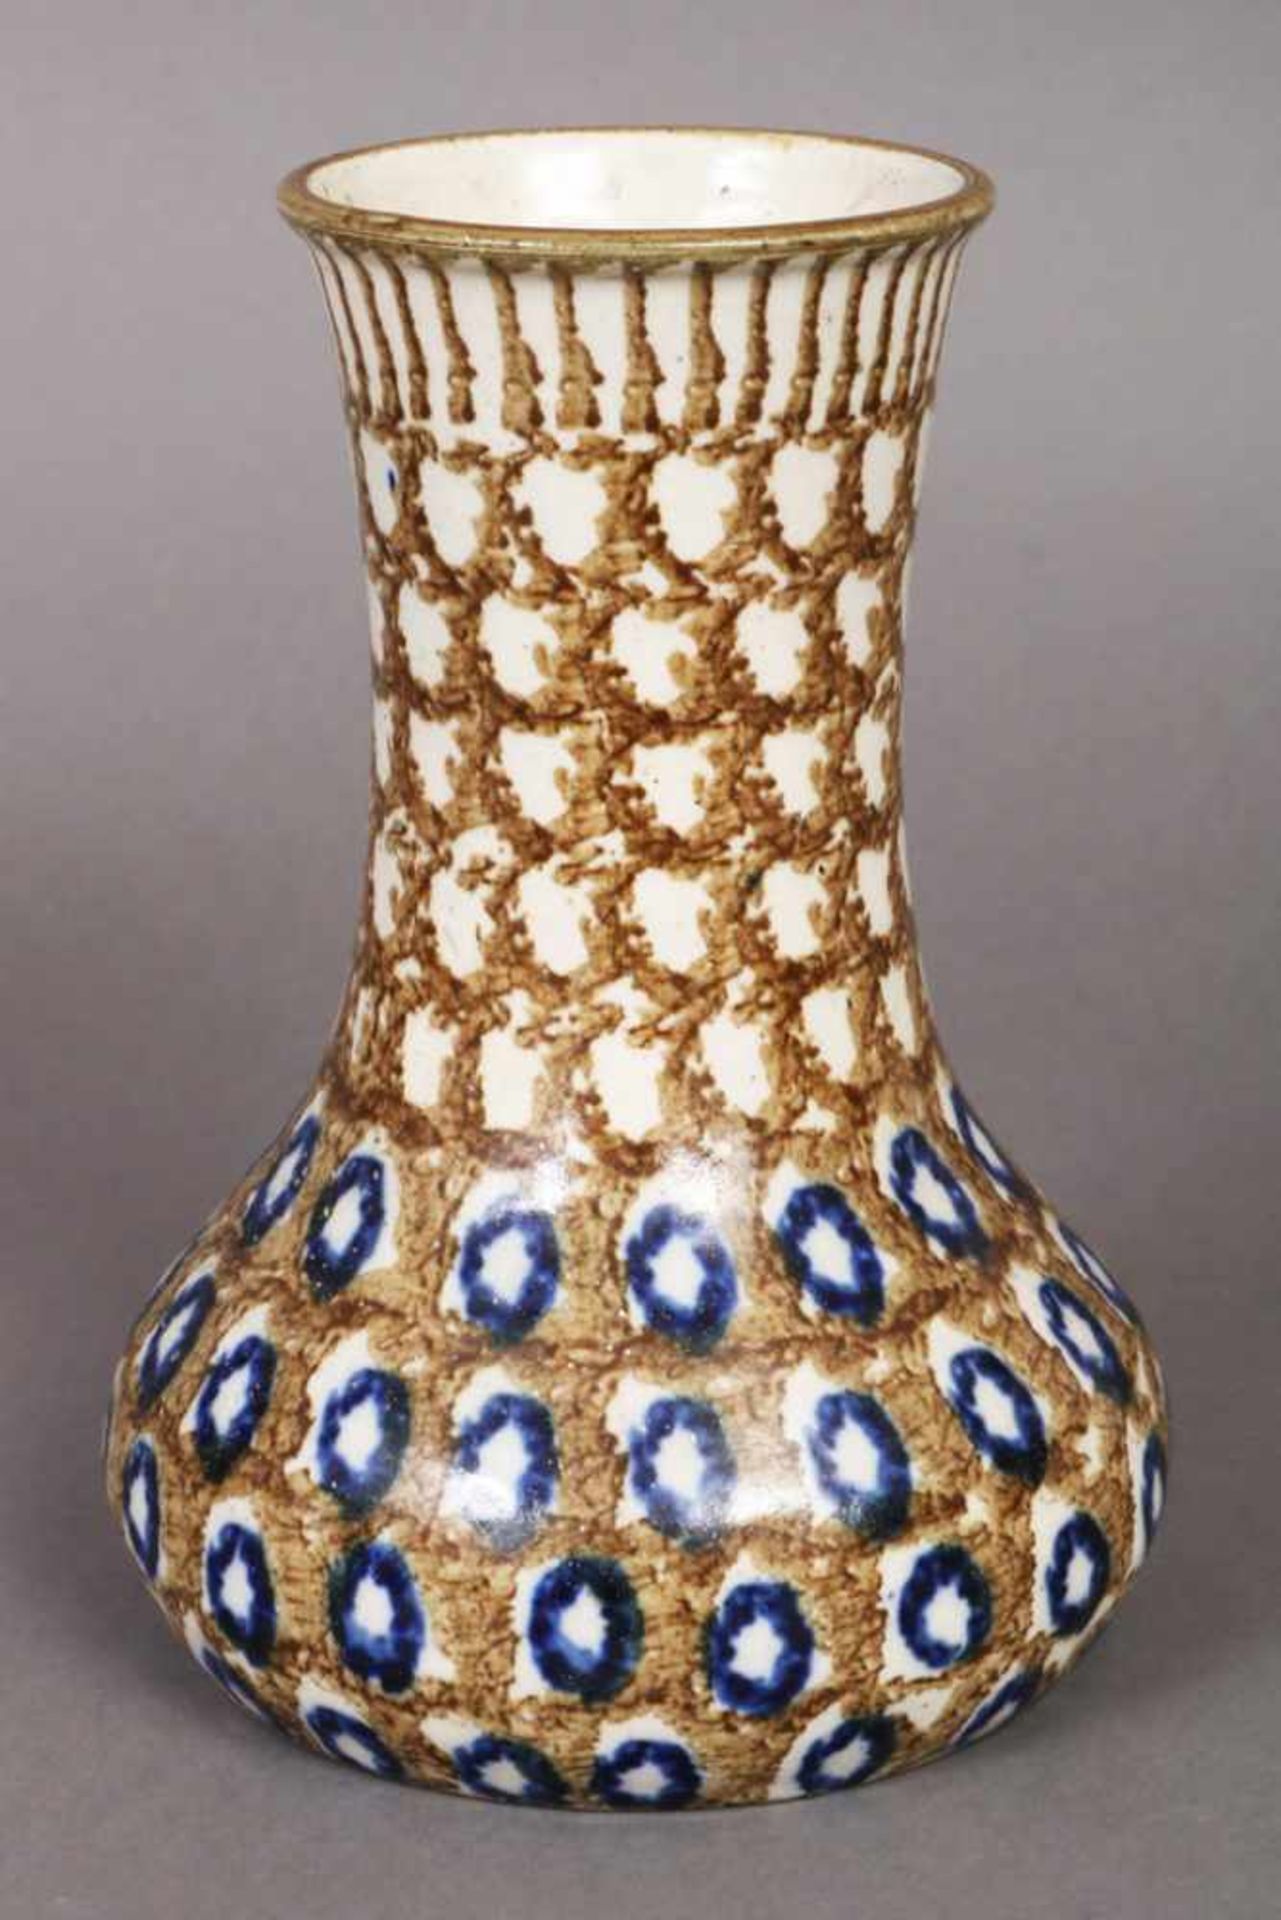 BUNZLAU Keramikvase um 1900, keulenförmiger Korpus mit manufakturtypischen braun-blauem